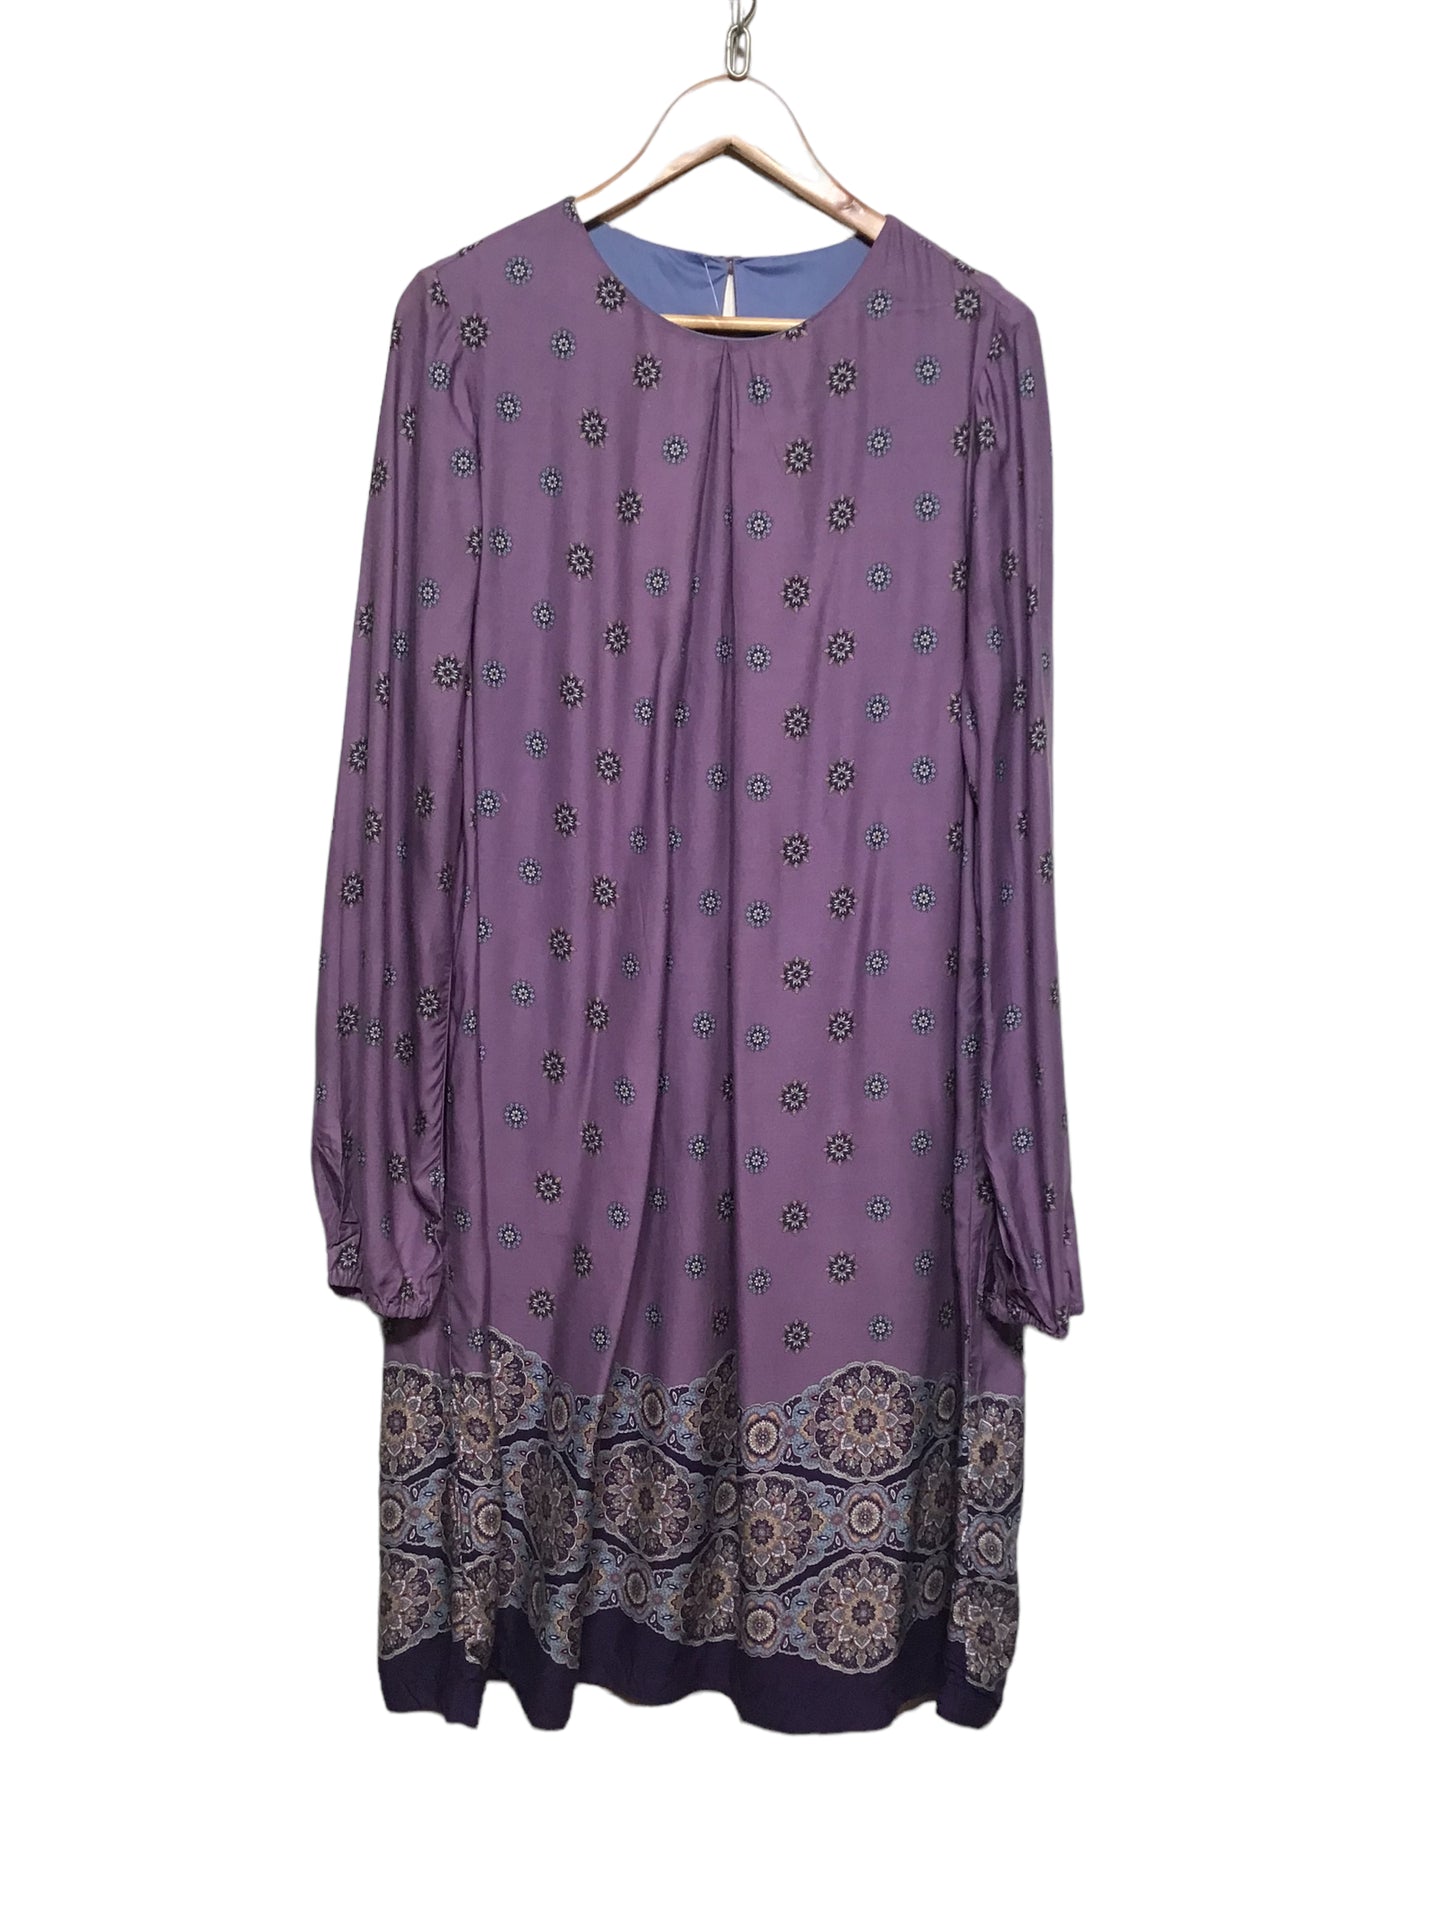 Patterned Dress (Size XXL)